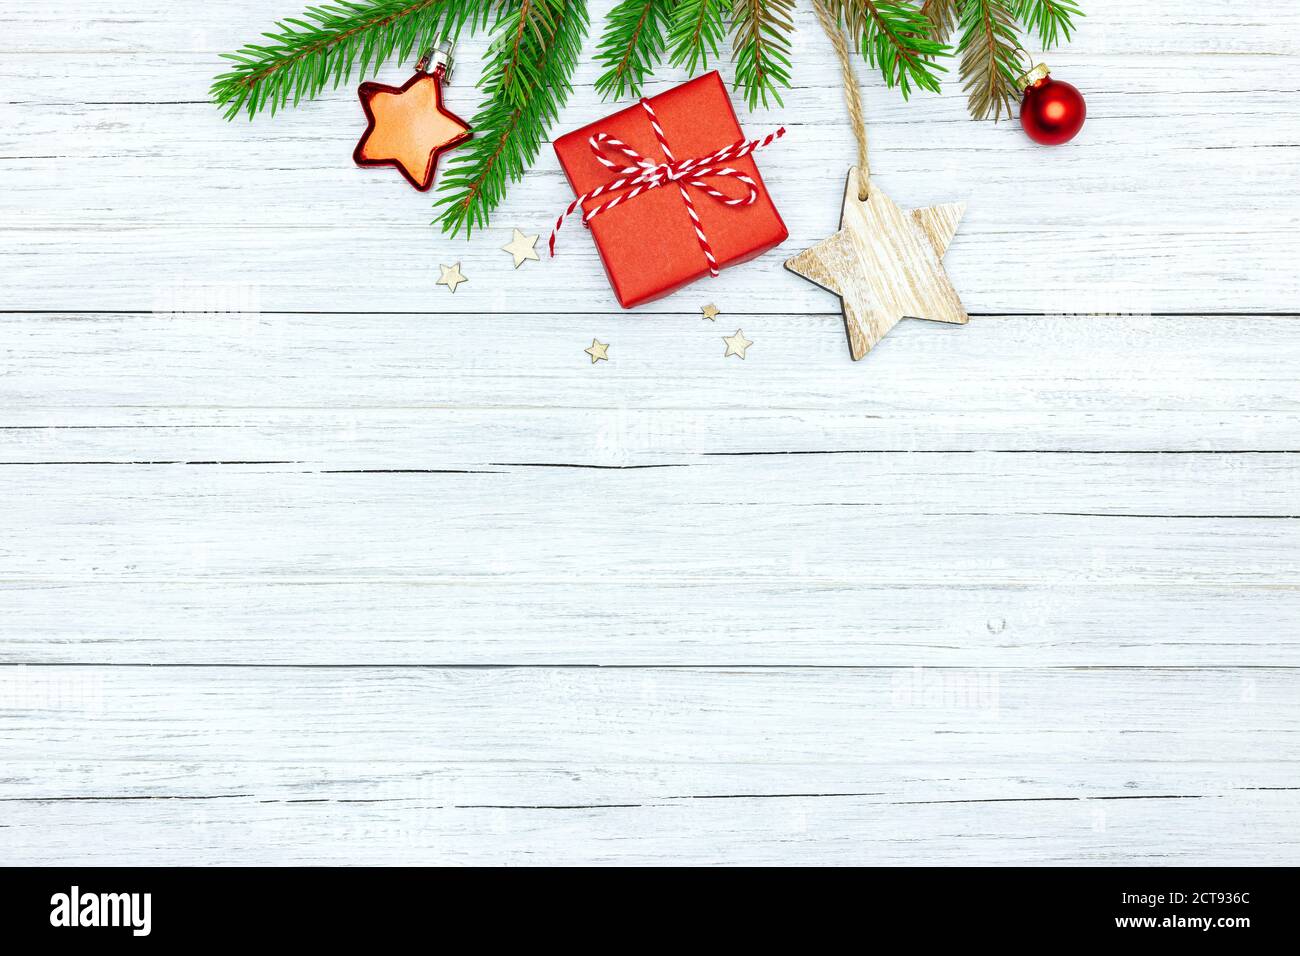 Weisse Holz festlichen Winter Hintergrund mit grünen Tannenbaum Zweig, rote kleine Geschenkbox und weihnachtsdekorationen Stockfoto